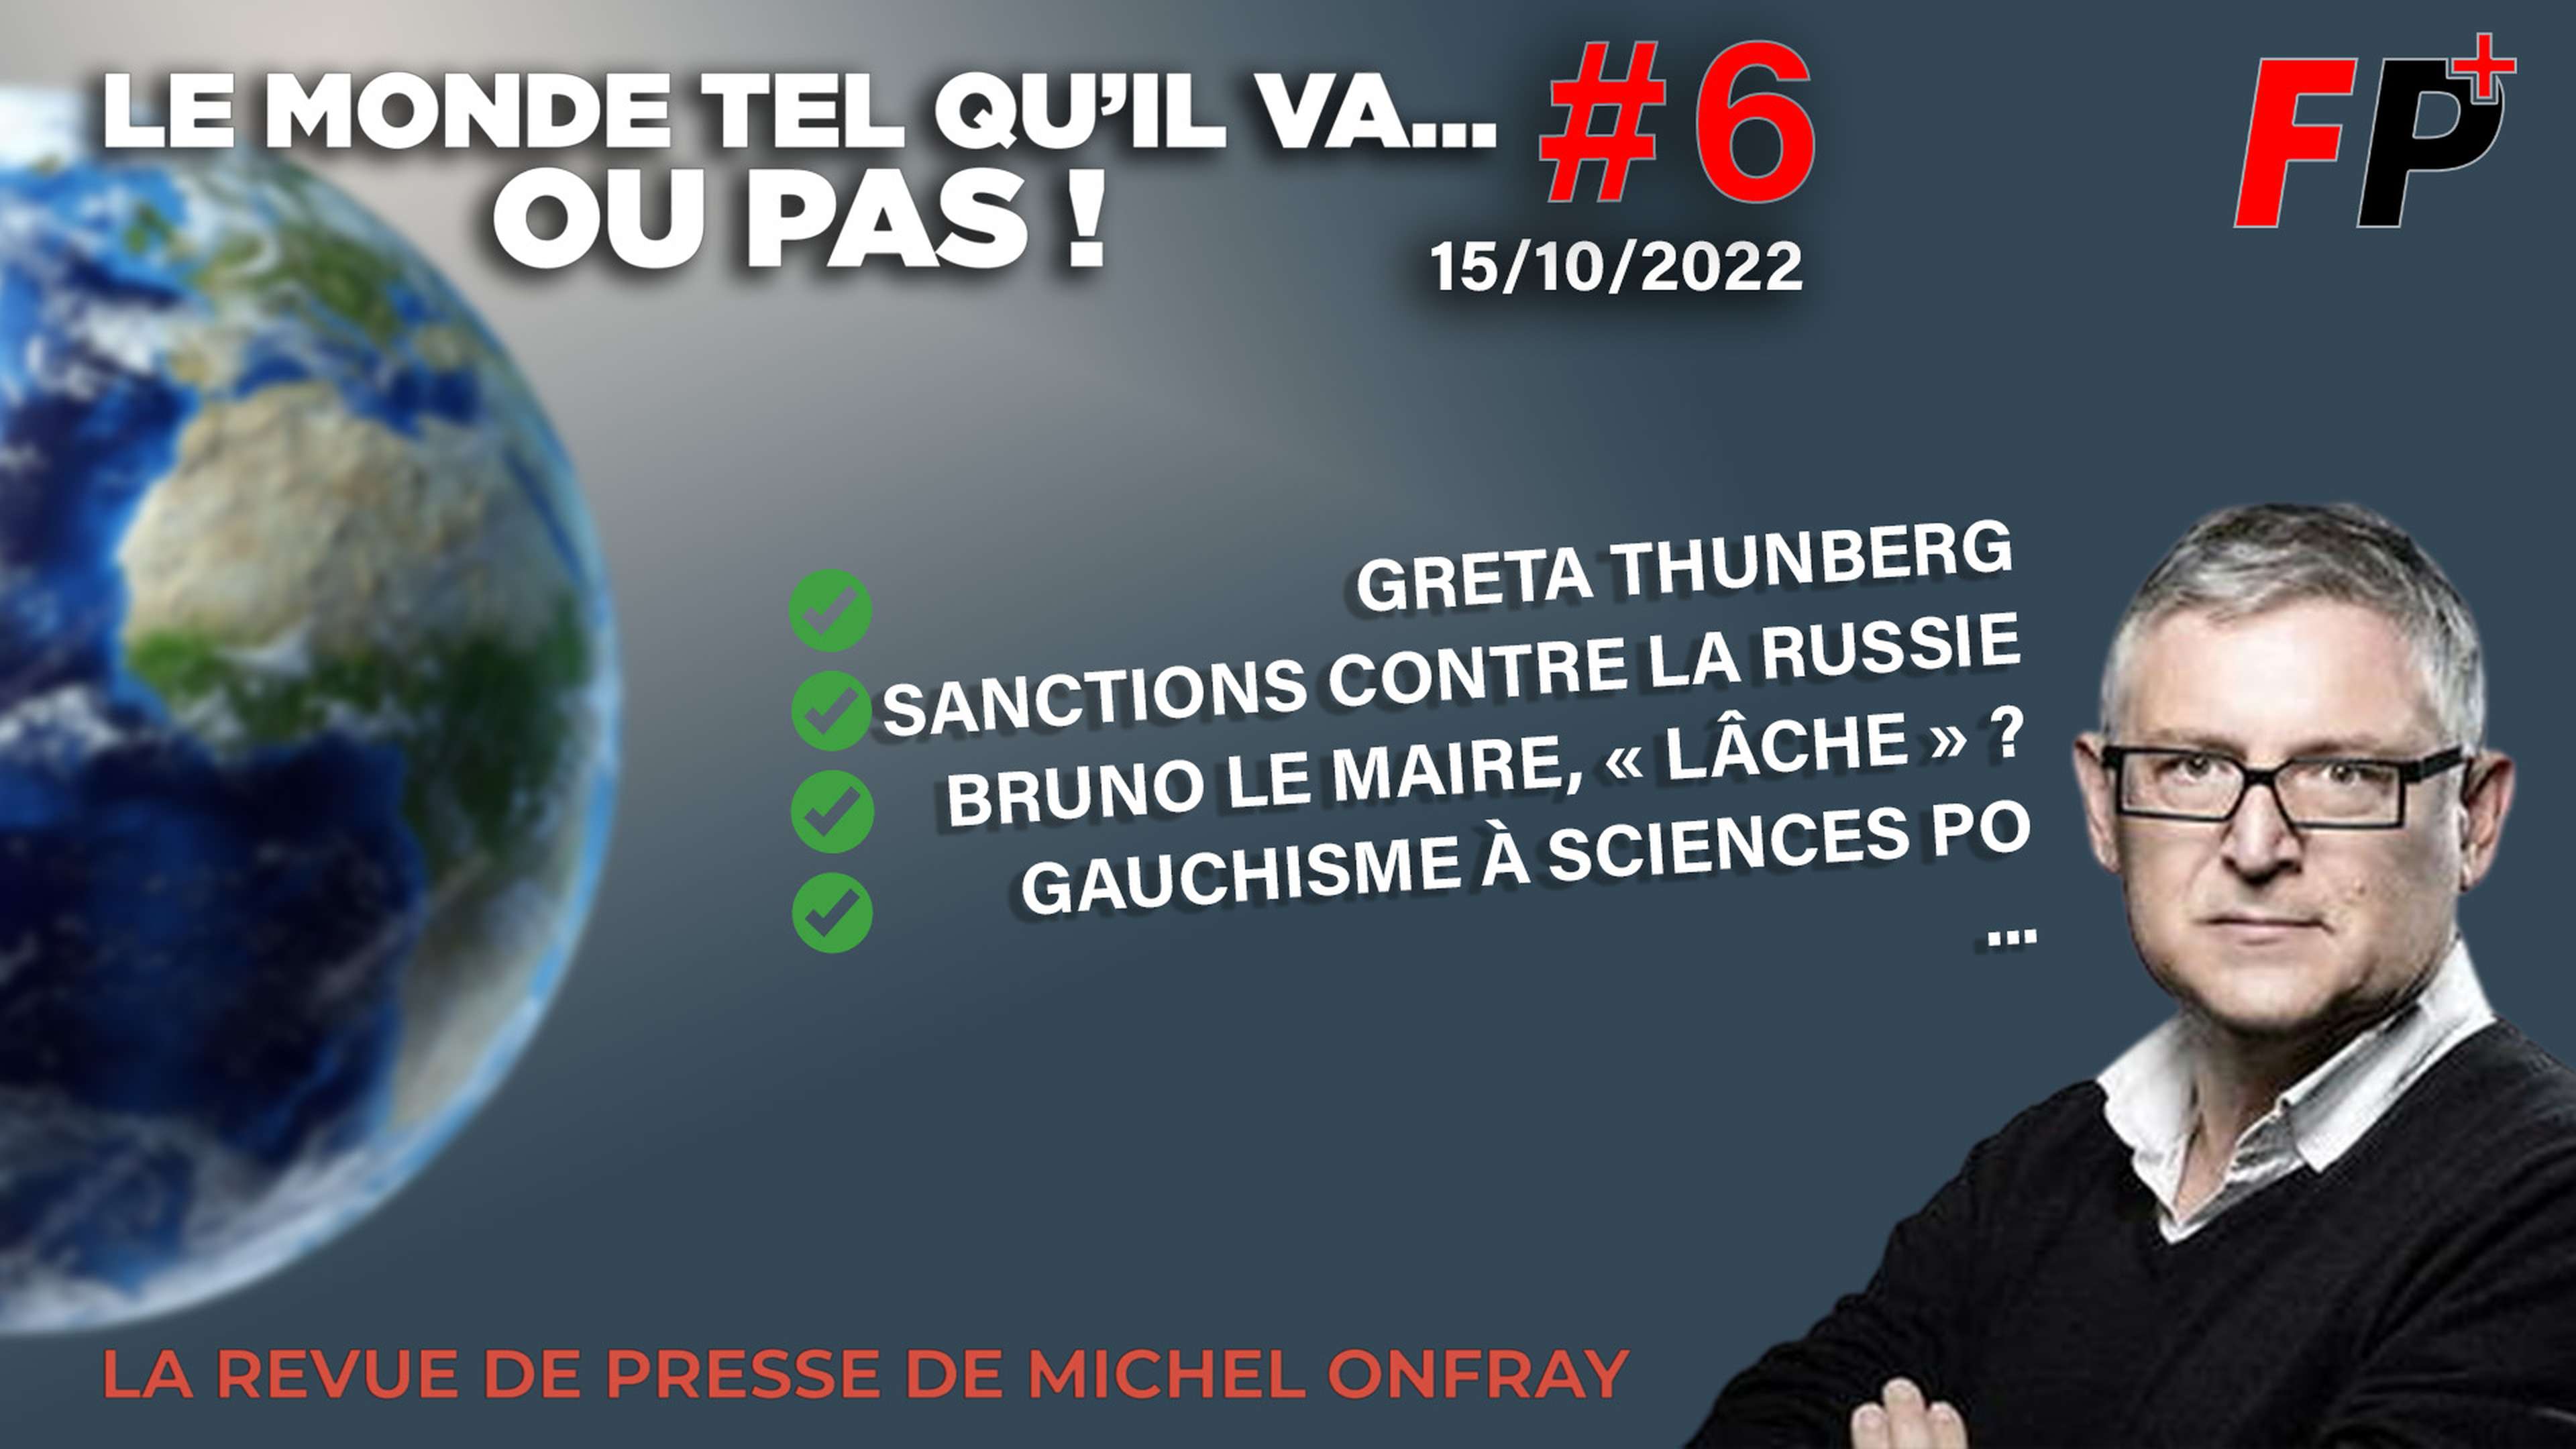 Le monde tel qu'il va… ou pas ! – la revue de presse de Michel Onfray (#6)